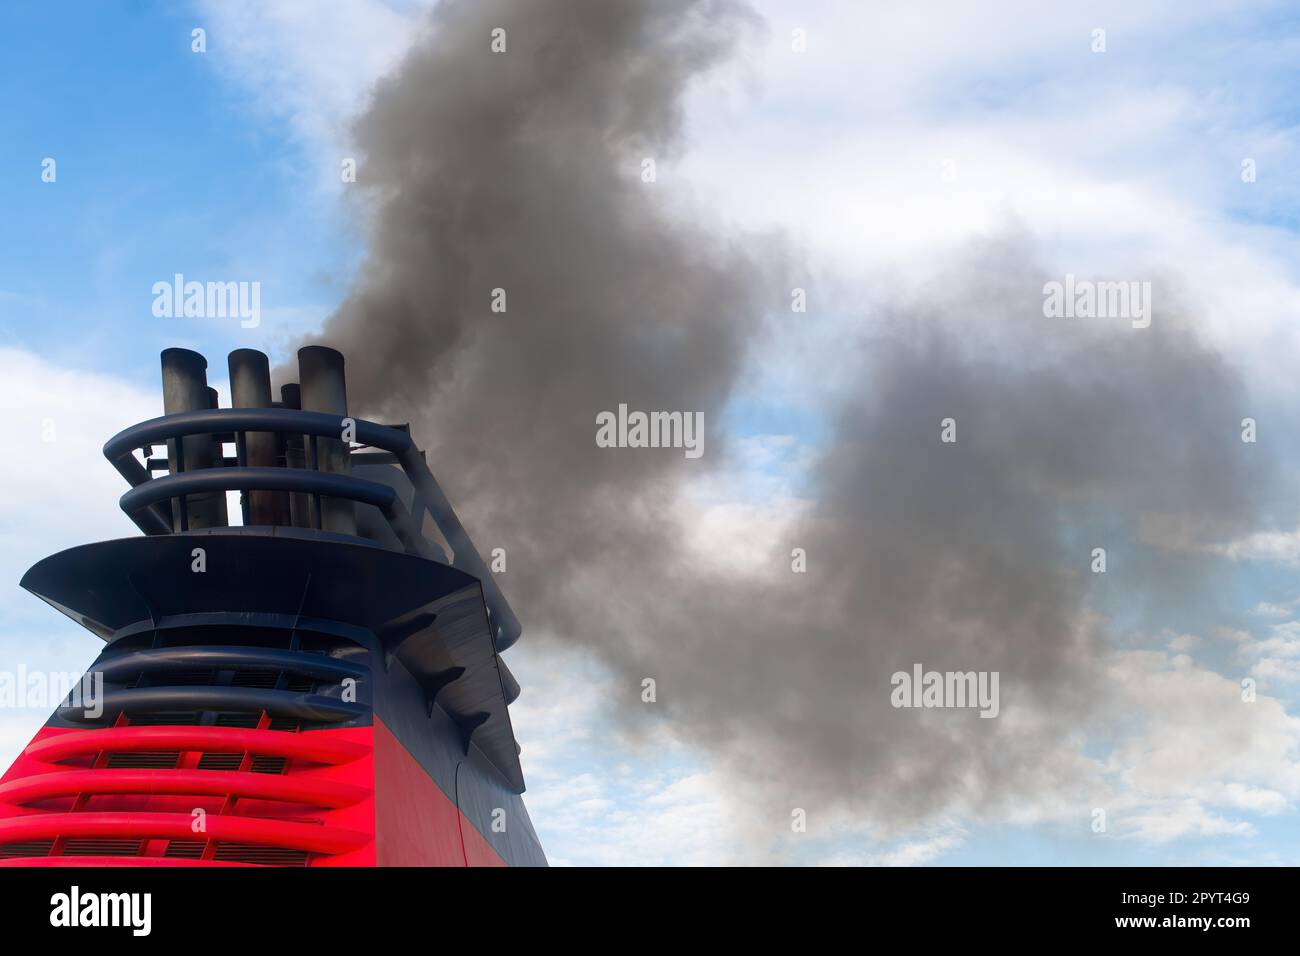 La fumée polluante sort des cheminées d'un navire géant Banque D'Images